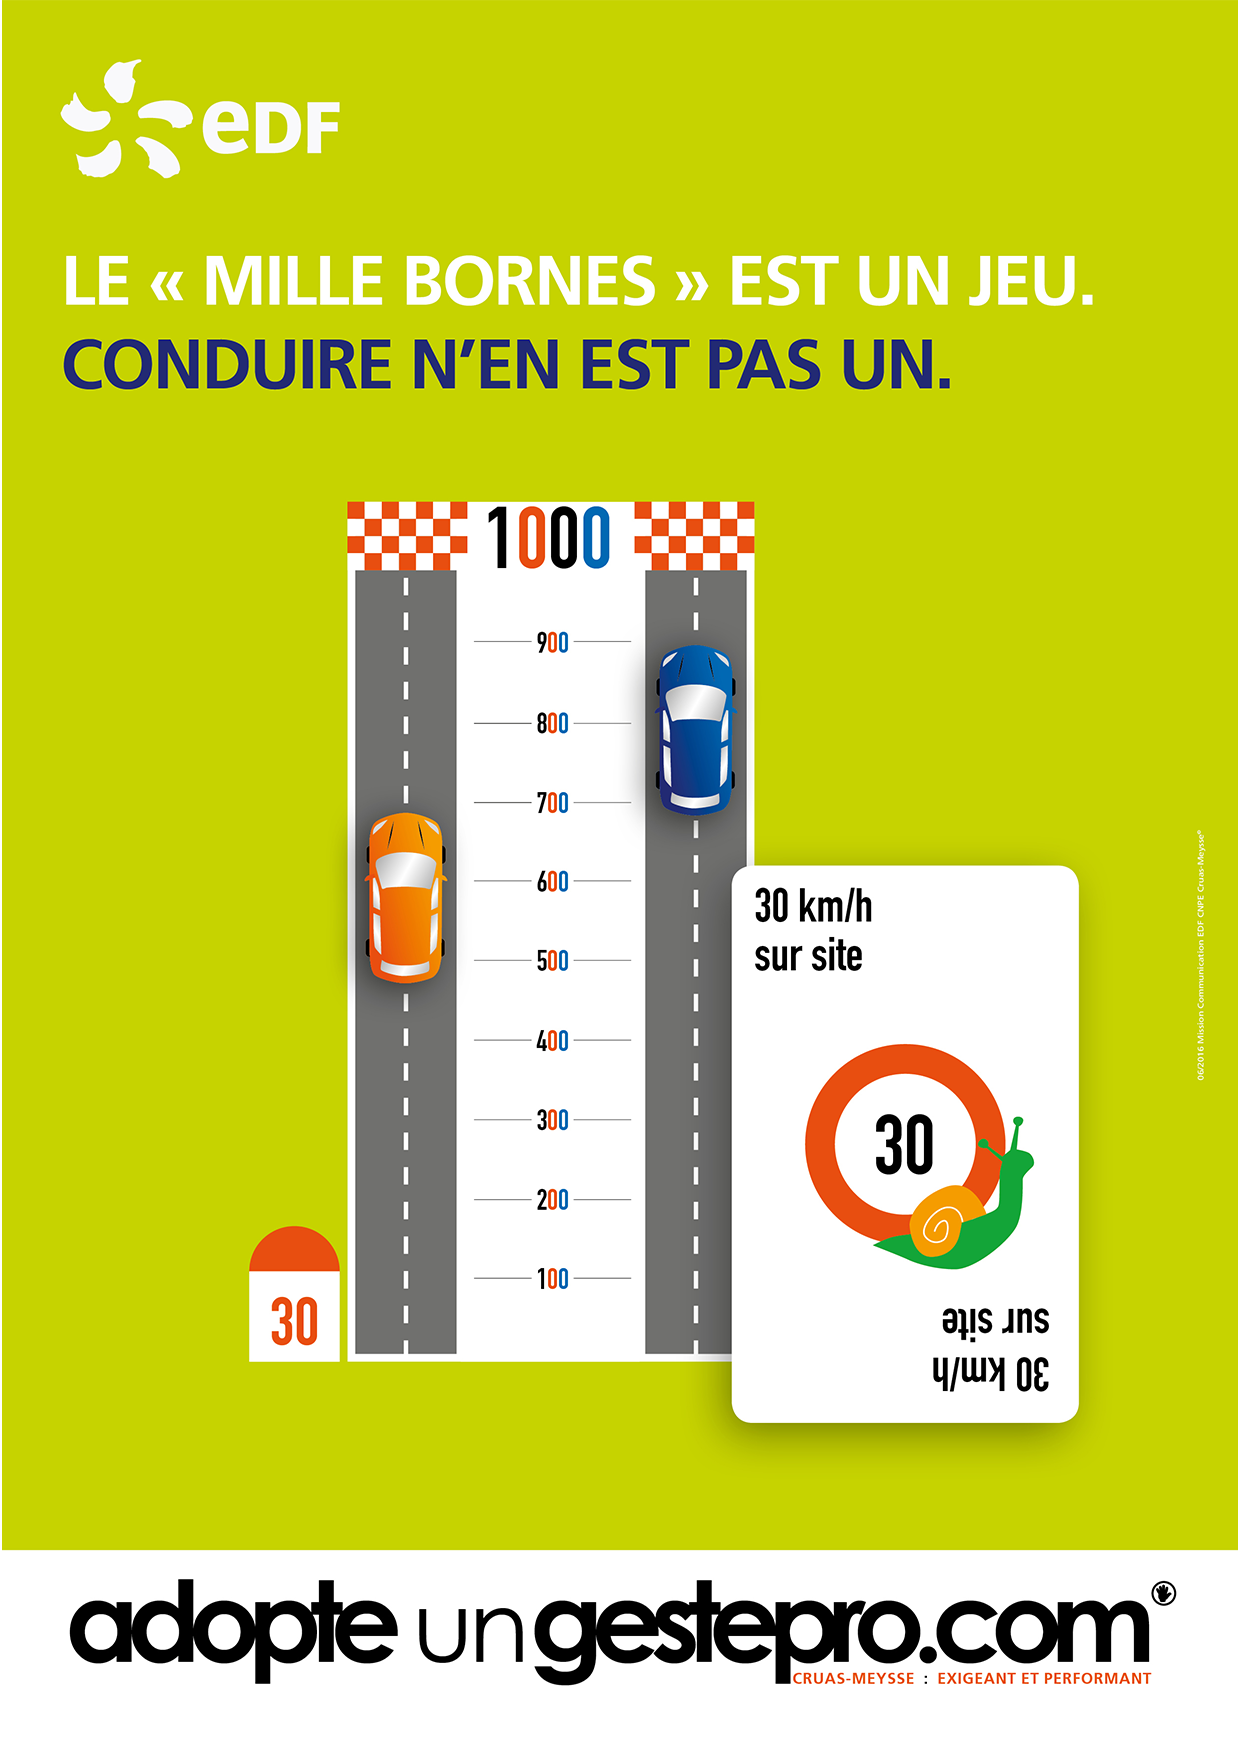 Affiche EDF sécurité routière